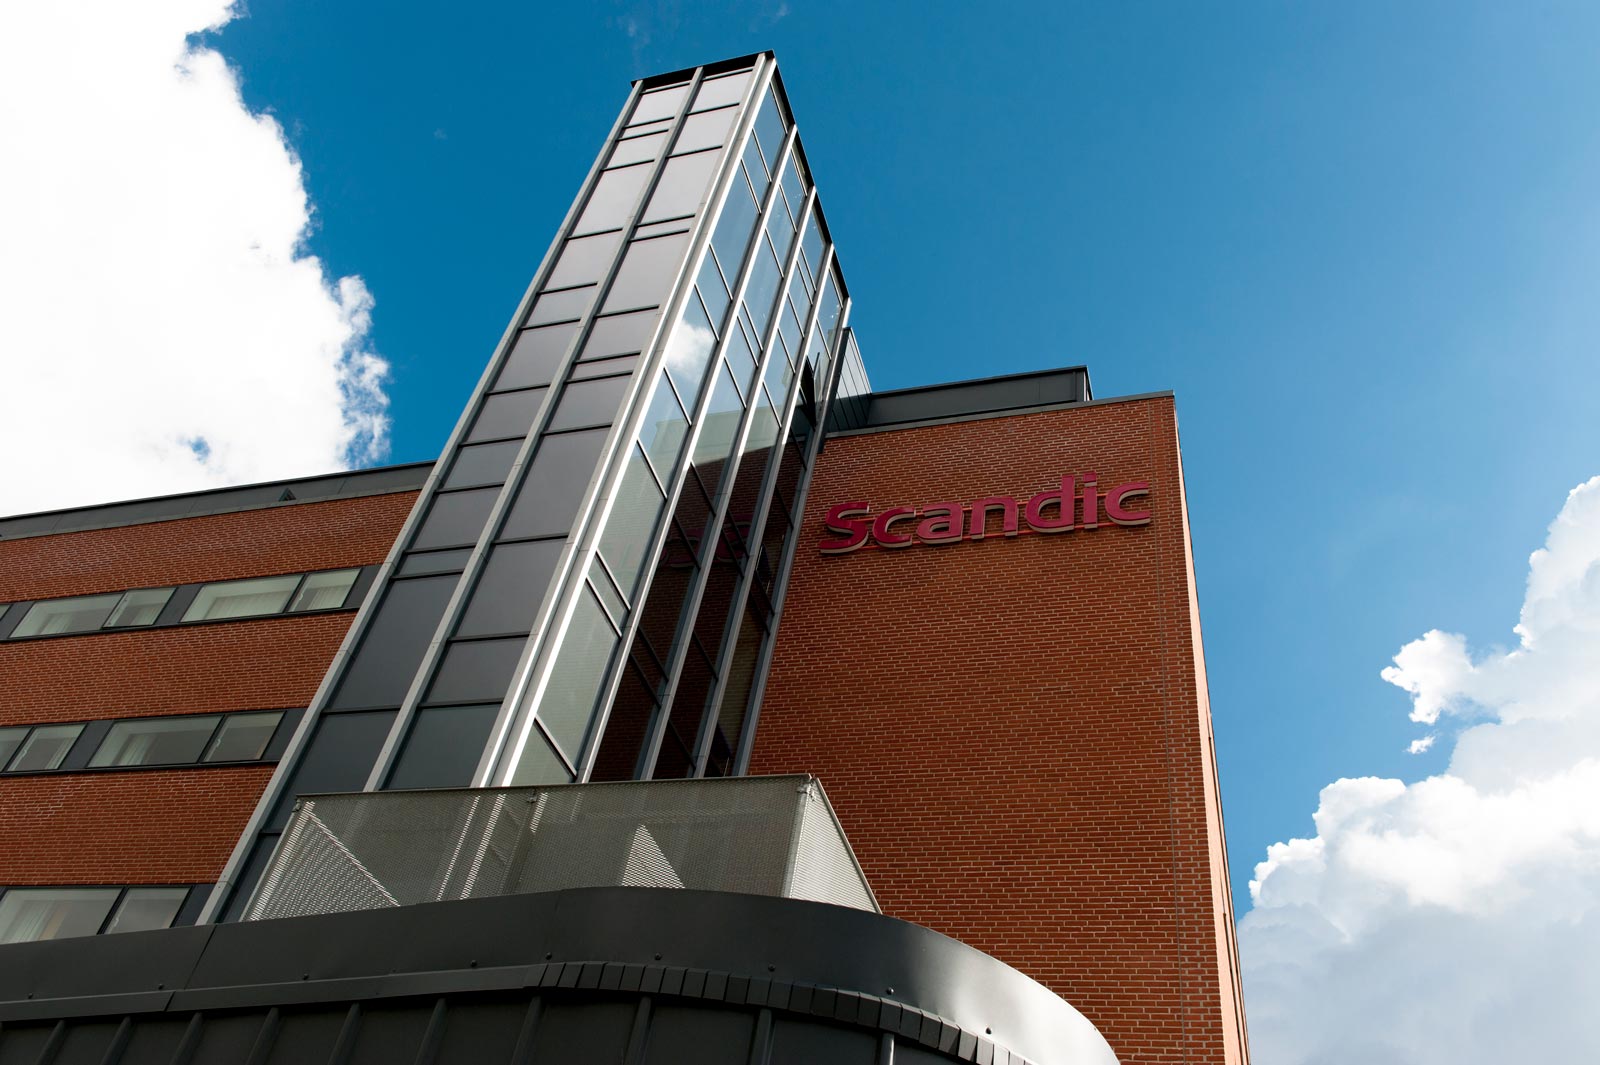 Hotel Scandic - Sydhavnen - Diskret hoteltilbygning i Sydhavnen med elegante facadefinesser